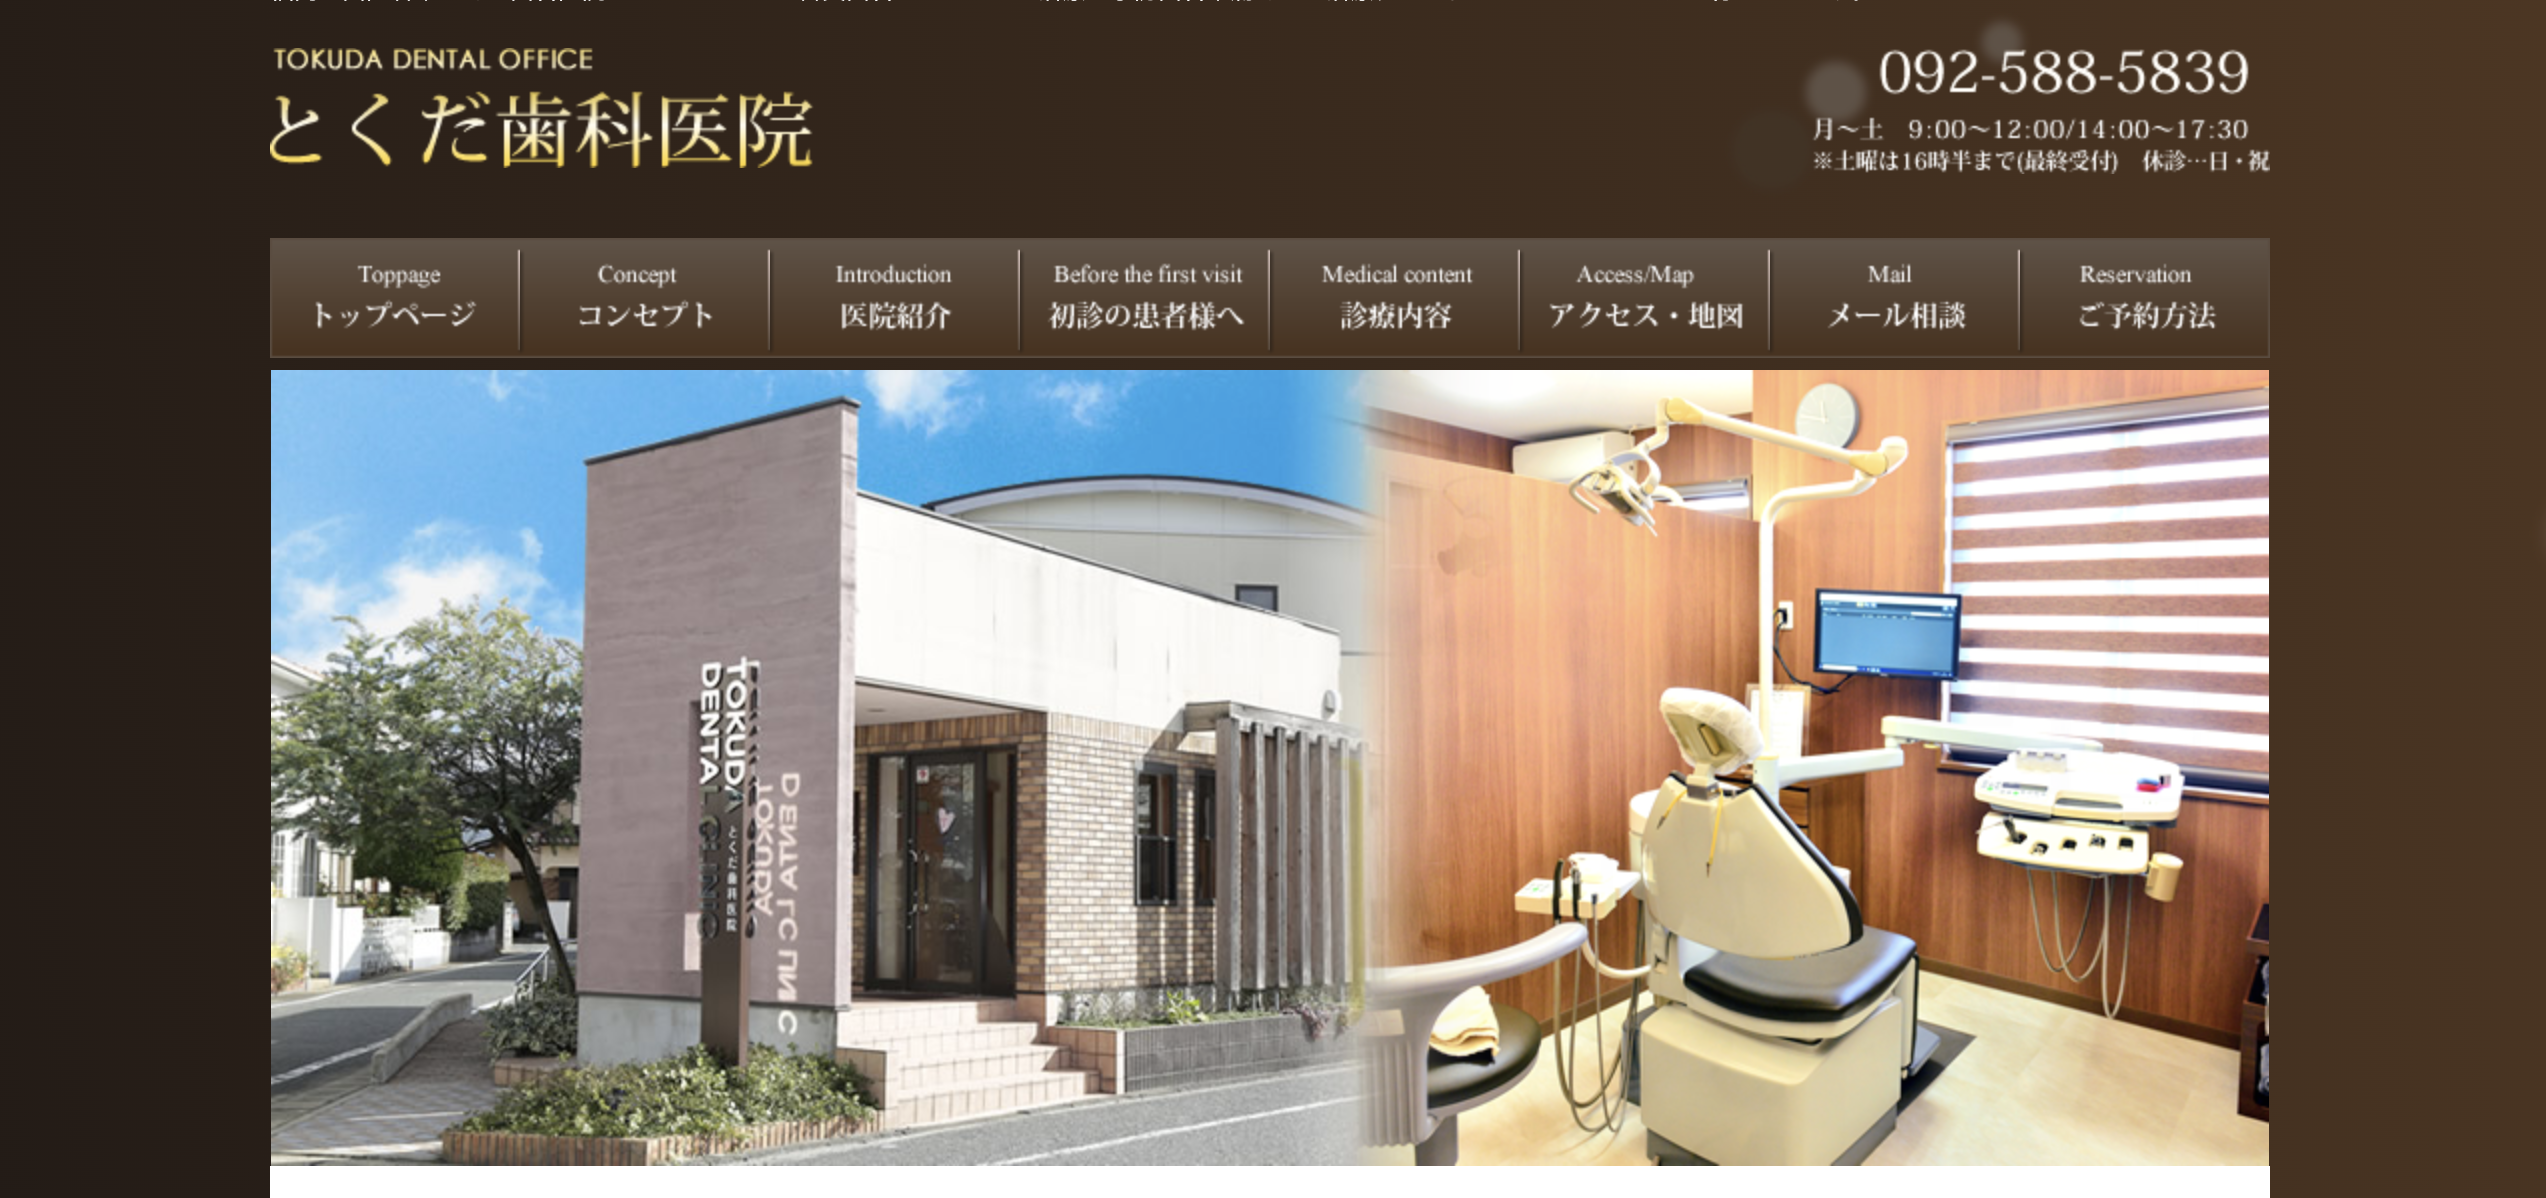 福岡県のインプラント治療におすすめの歯科クリニック5選 とくだ歯科医院